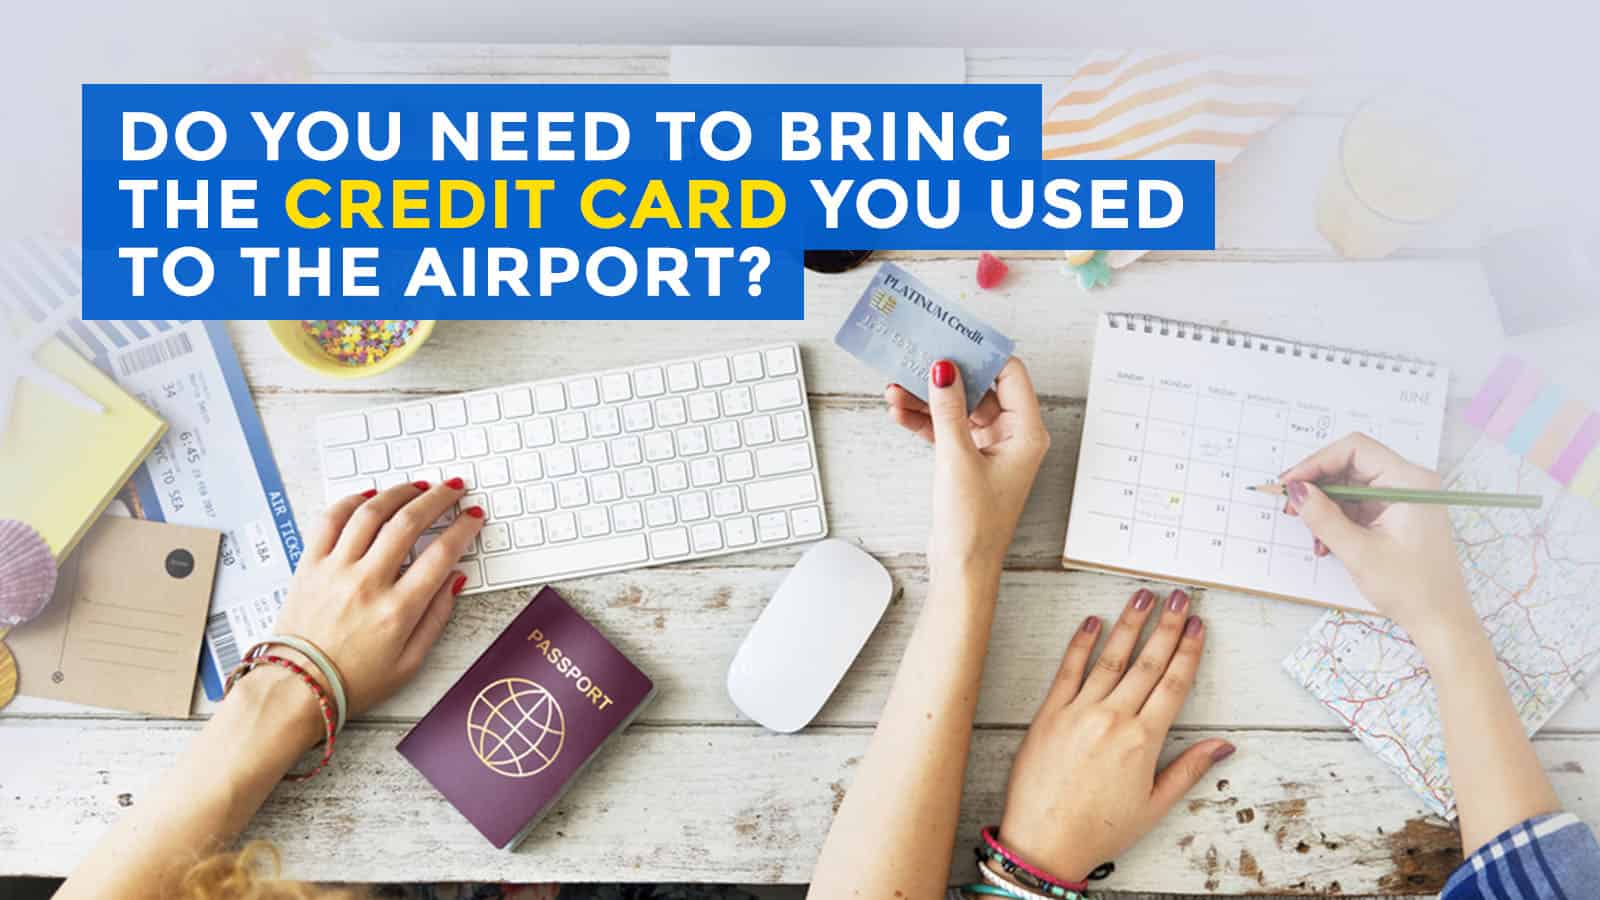 你需要在机场办理登机手续时携带你的信用卡吗?